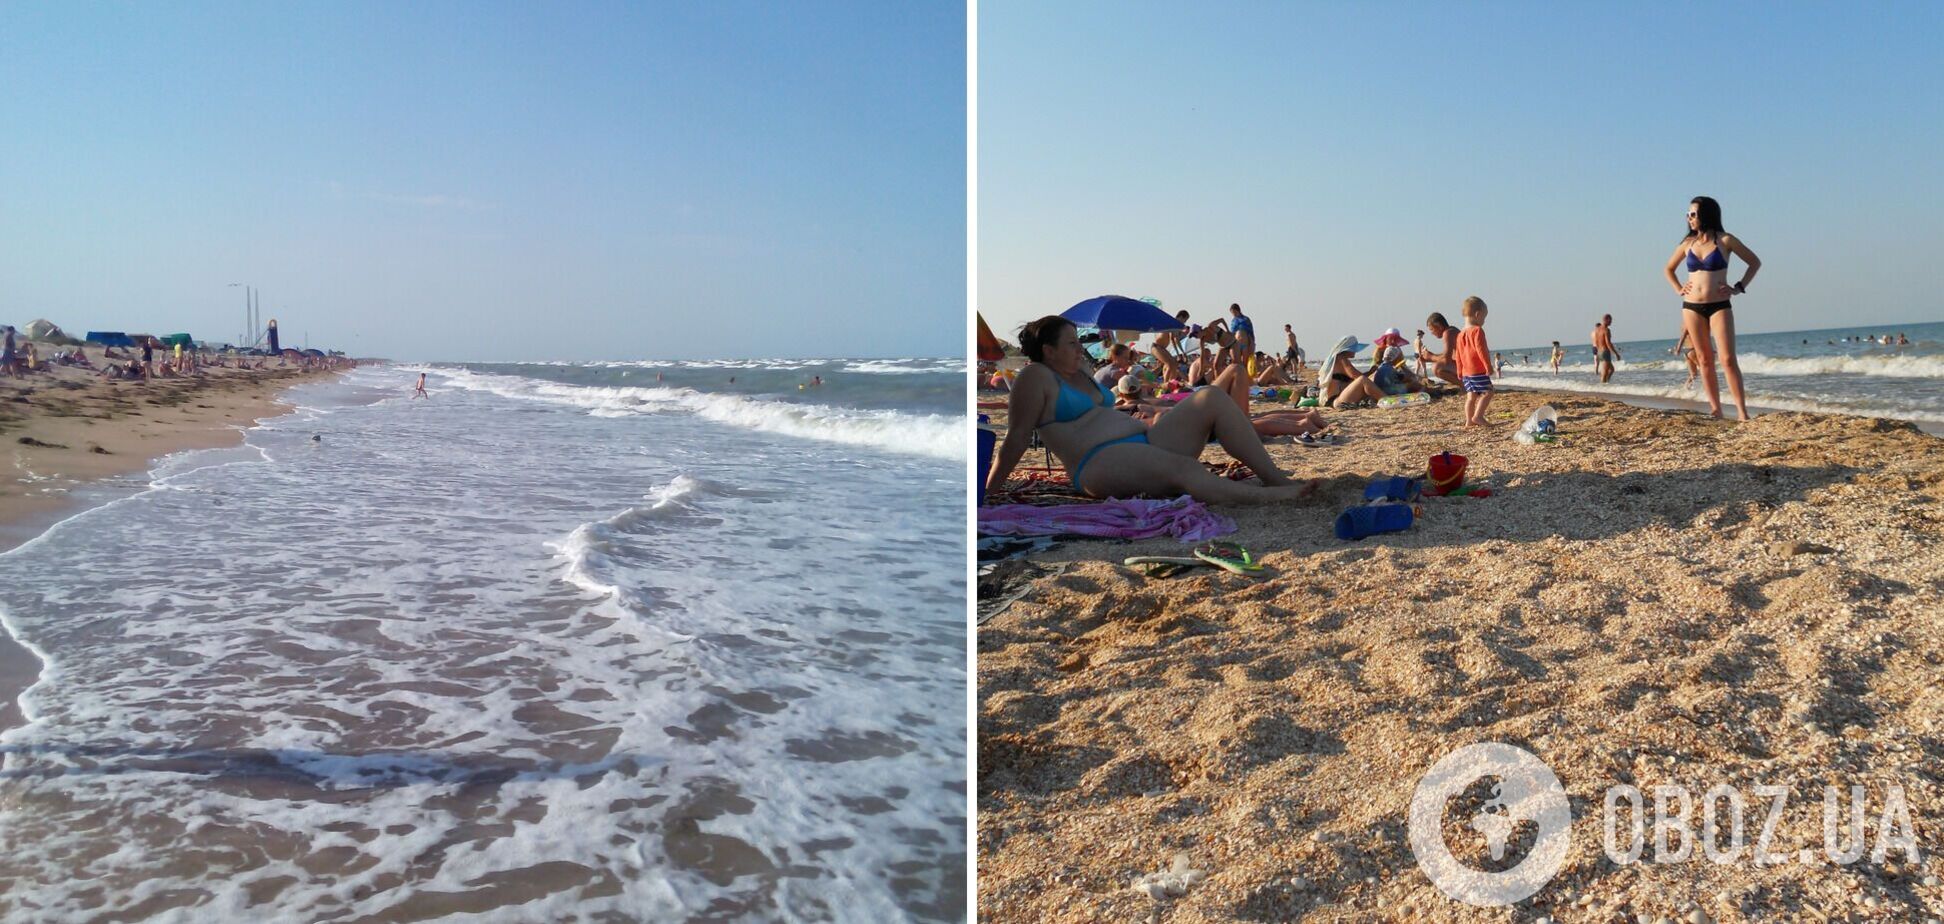 Какое море лучше для отдыха – Азовское или Черное: сравнение пляжей, цен и развлечений. Фото